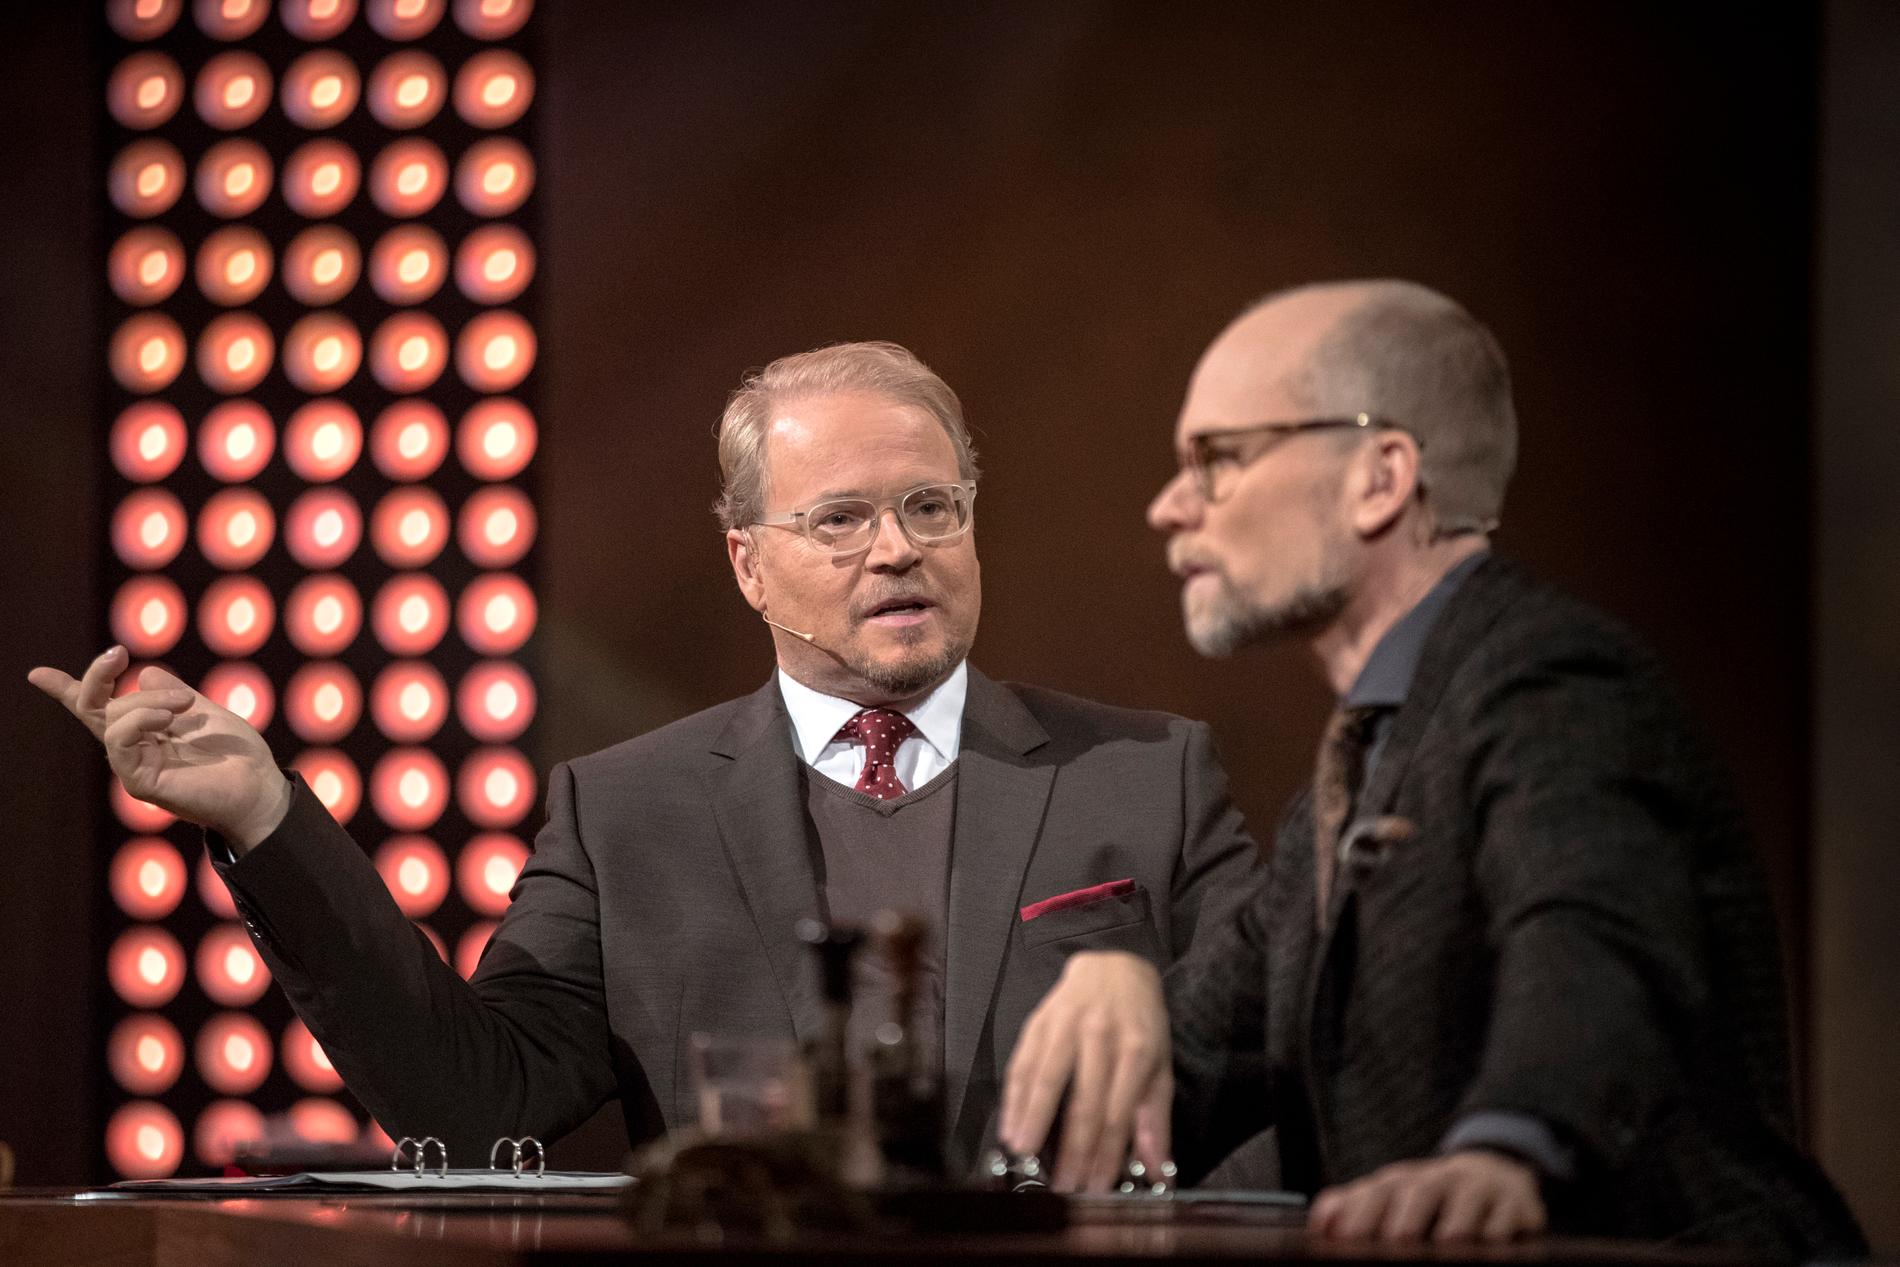 Fredrik Lindström och Kristian Luuk spelar in nya avsnitt tillsammans med Louise Epstein och Thomas Nordegren. Arkivbild.